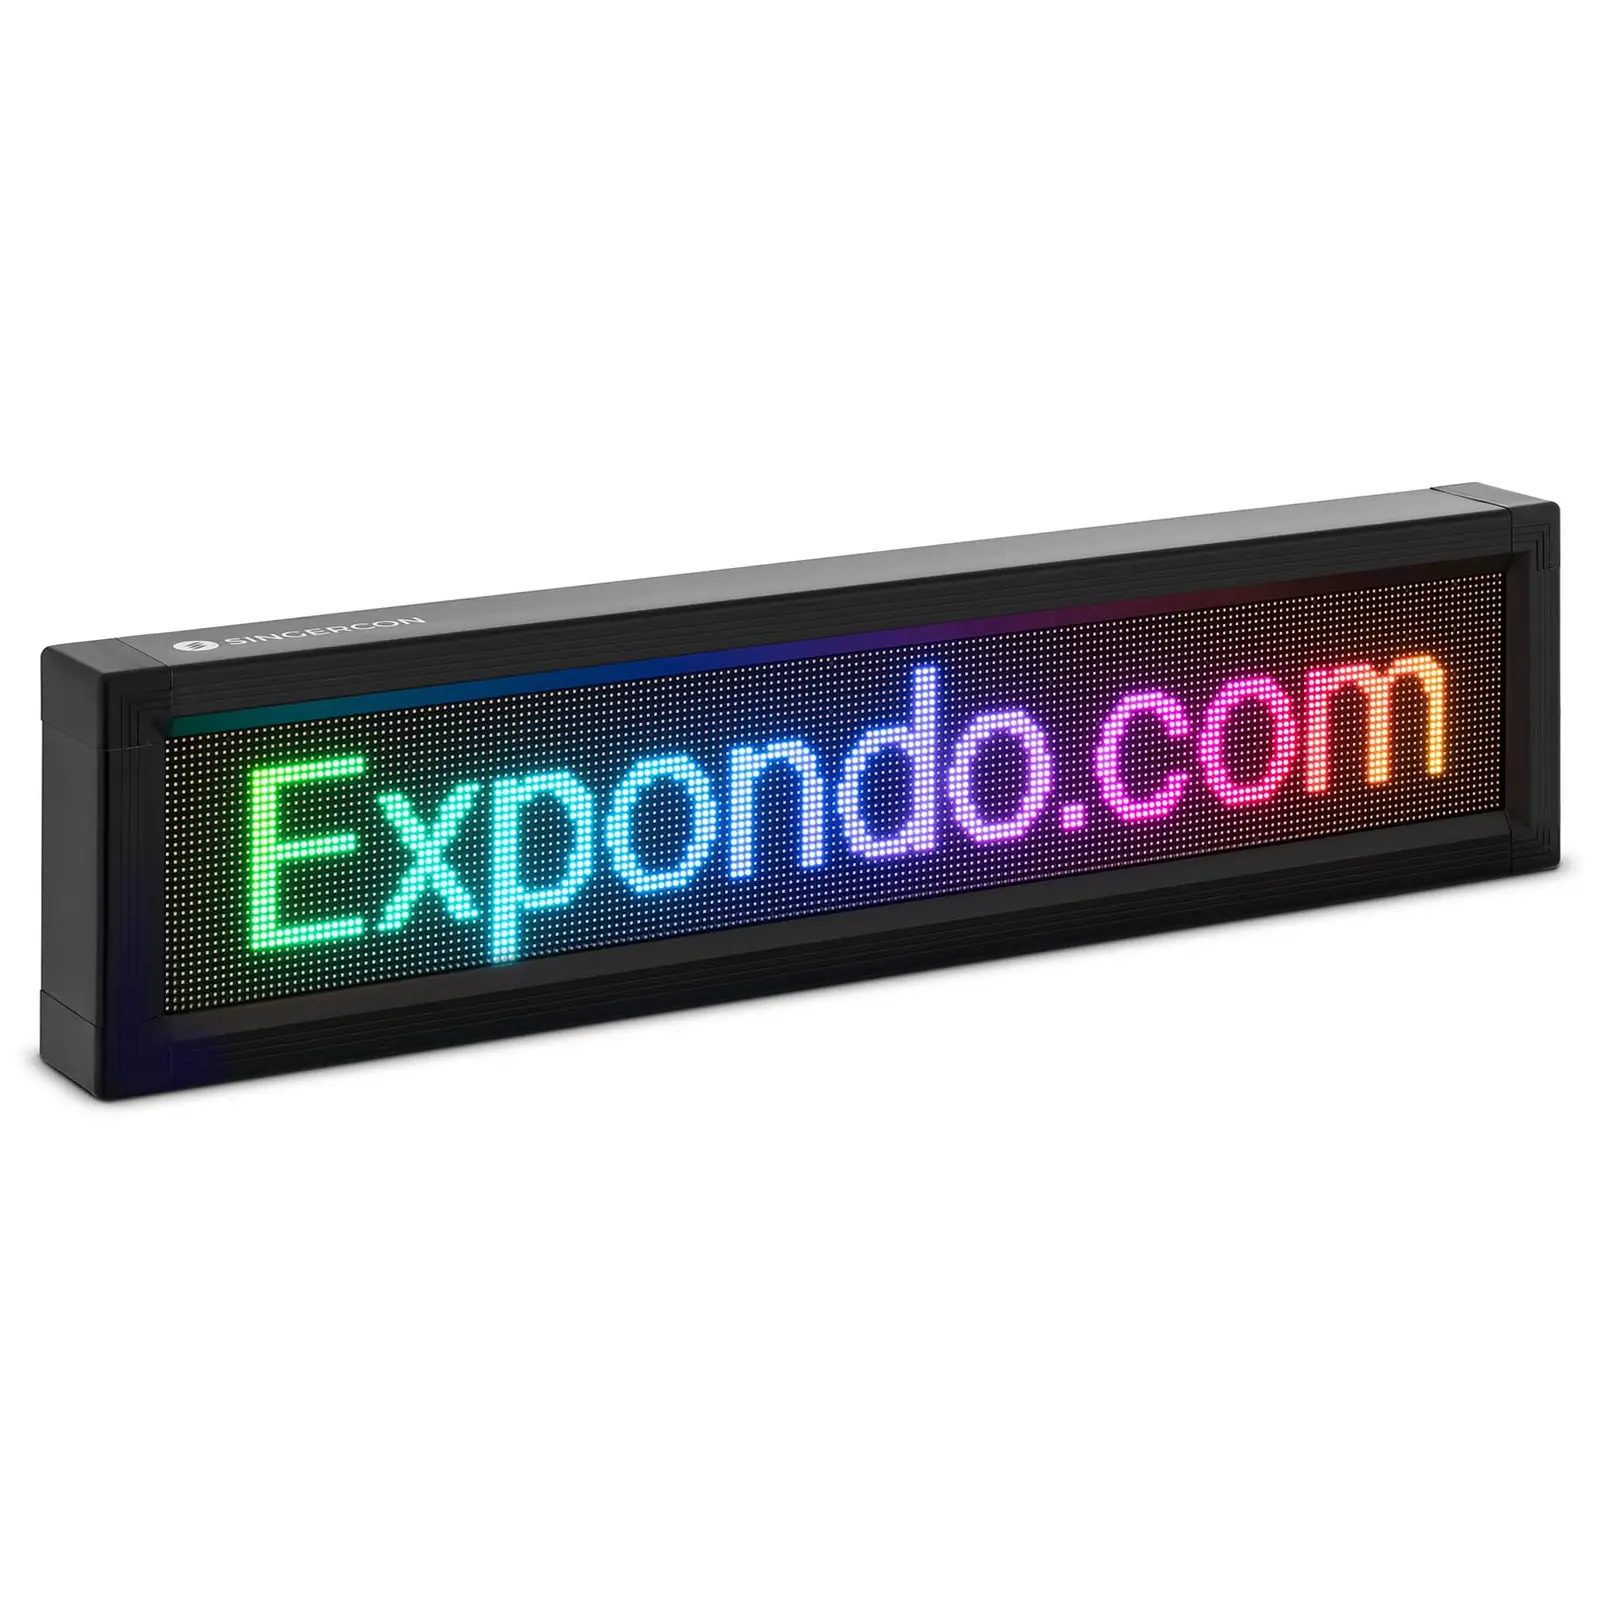 Panneau publicitaire LED - 192 x 32 LED couleur - 105 x 25 cm - Programmable via iOS et Android